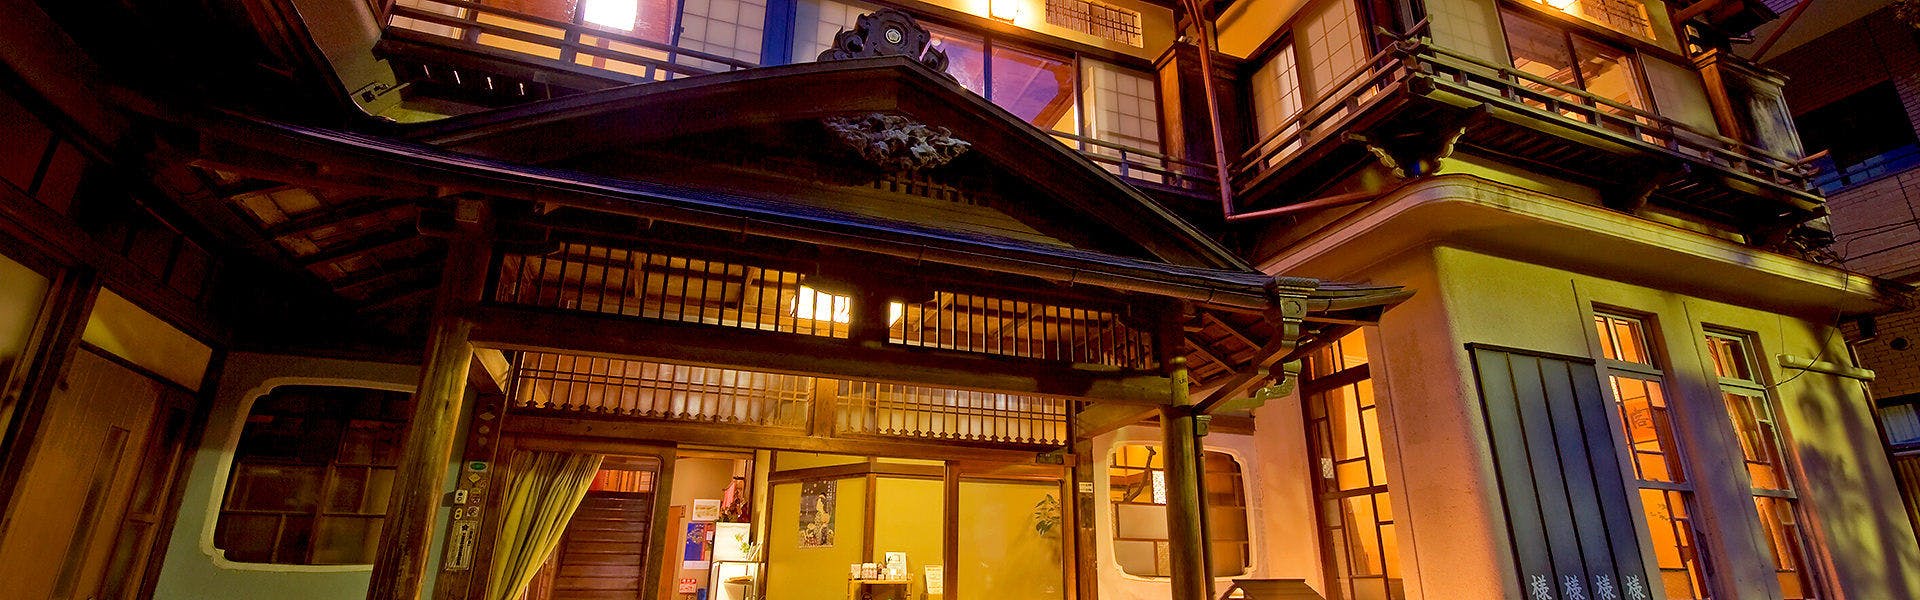 ランキング 神奈川県の名建築に泊まるおすすめの宿 特集 ホテル 旅館 宿泊予約は 一休 Com